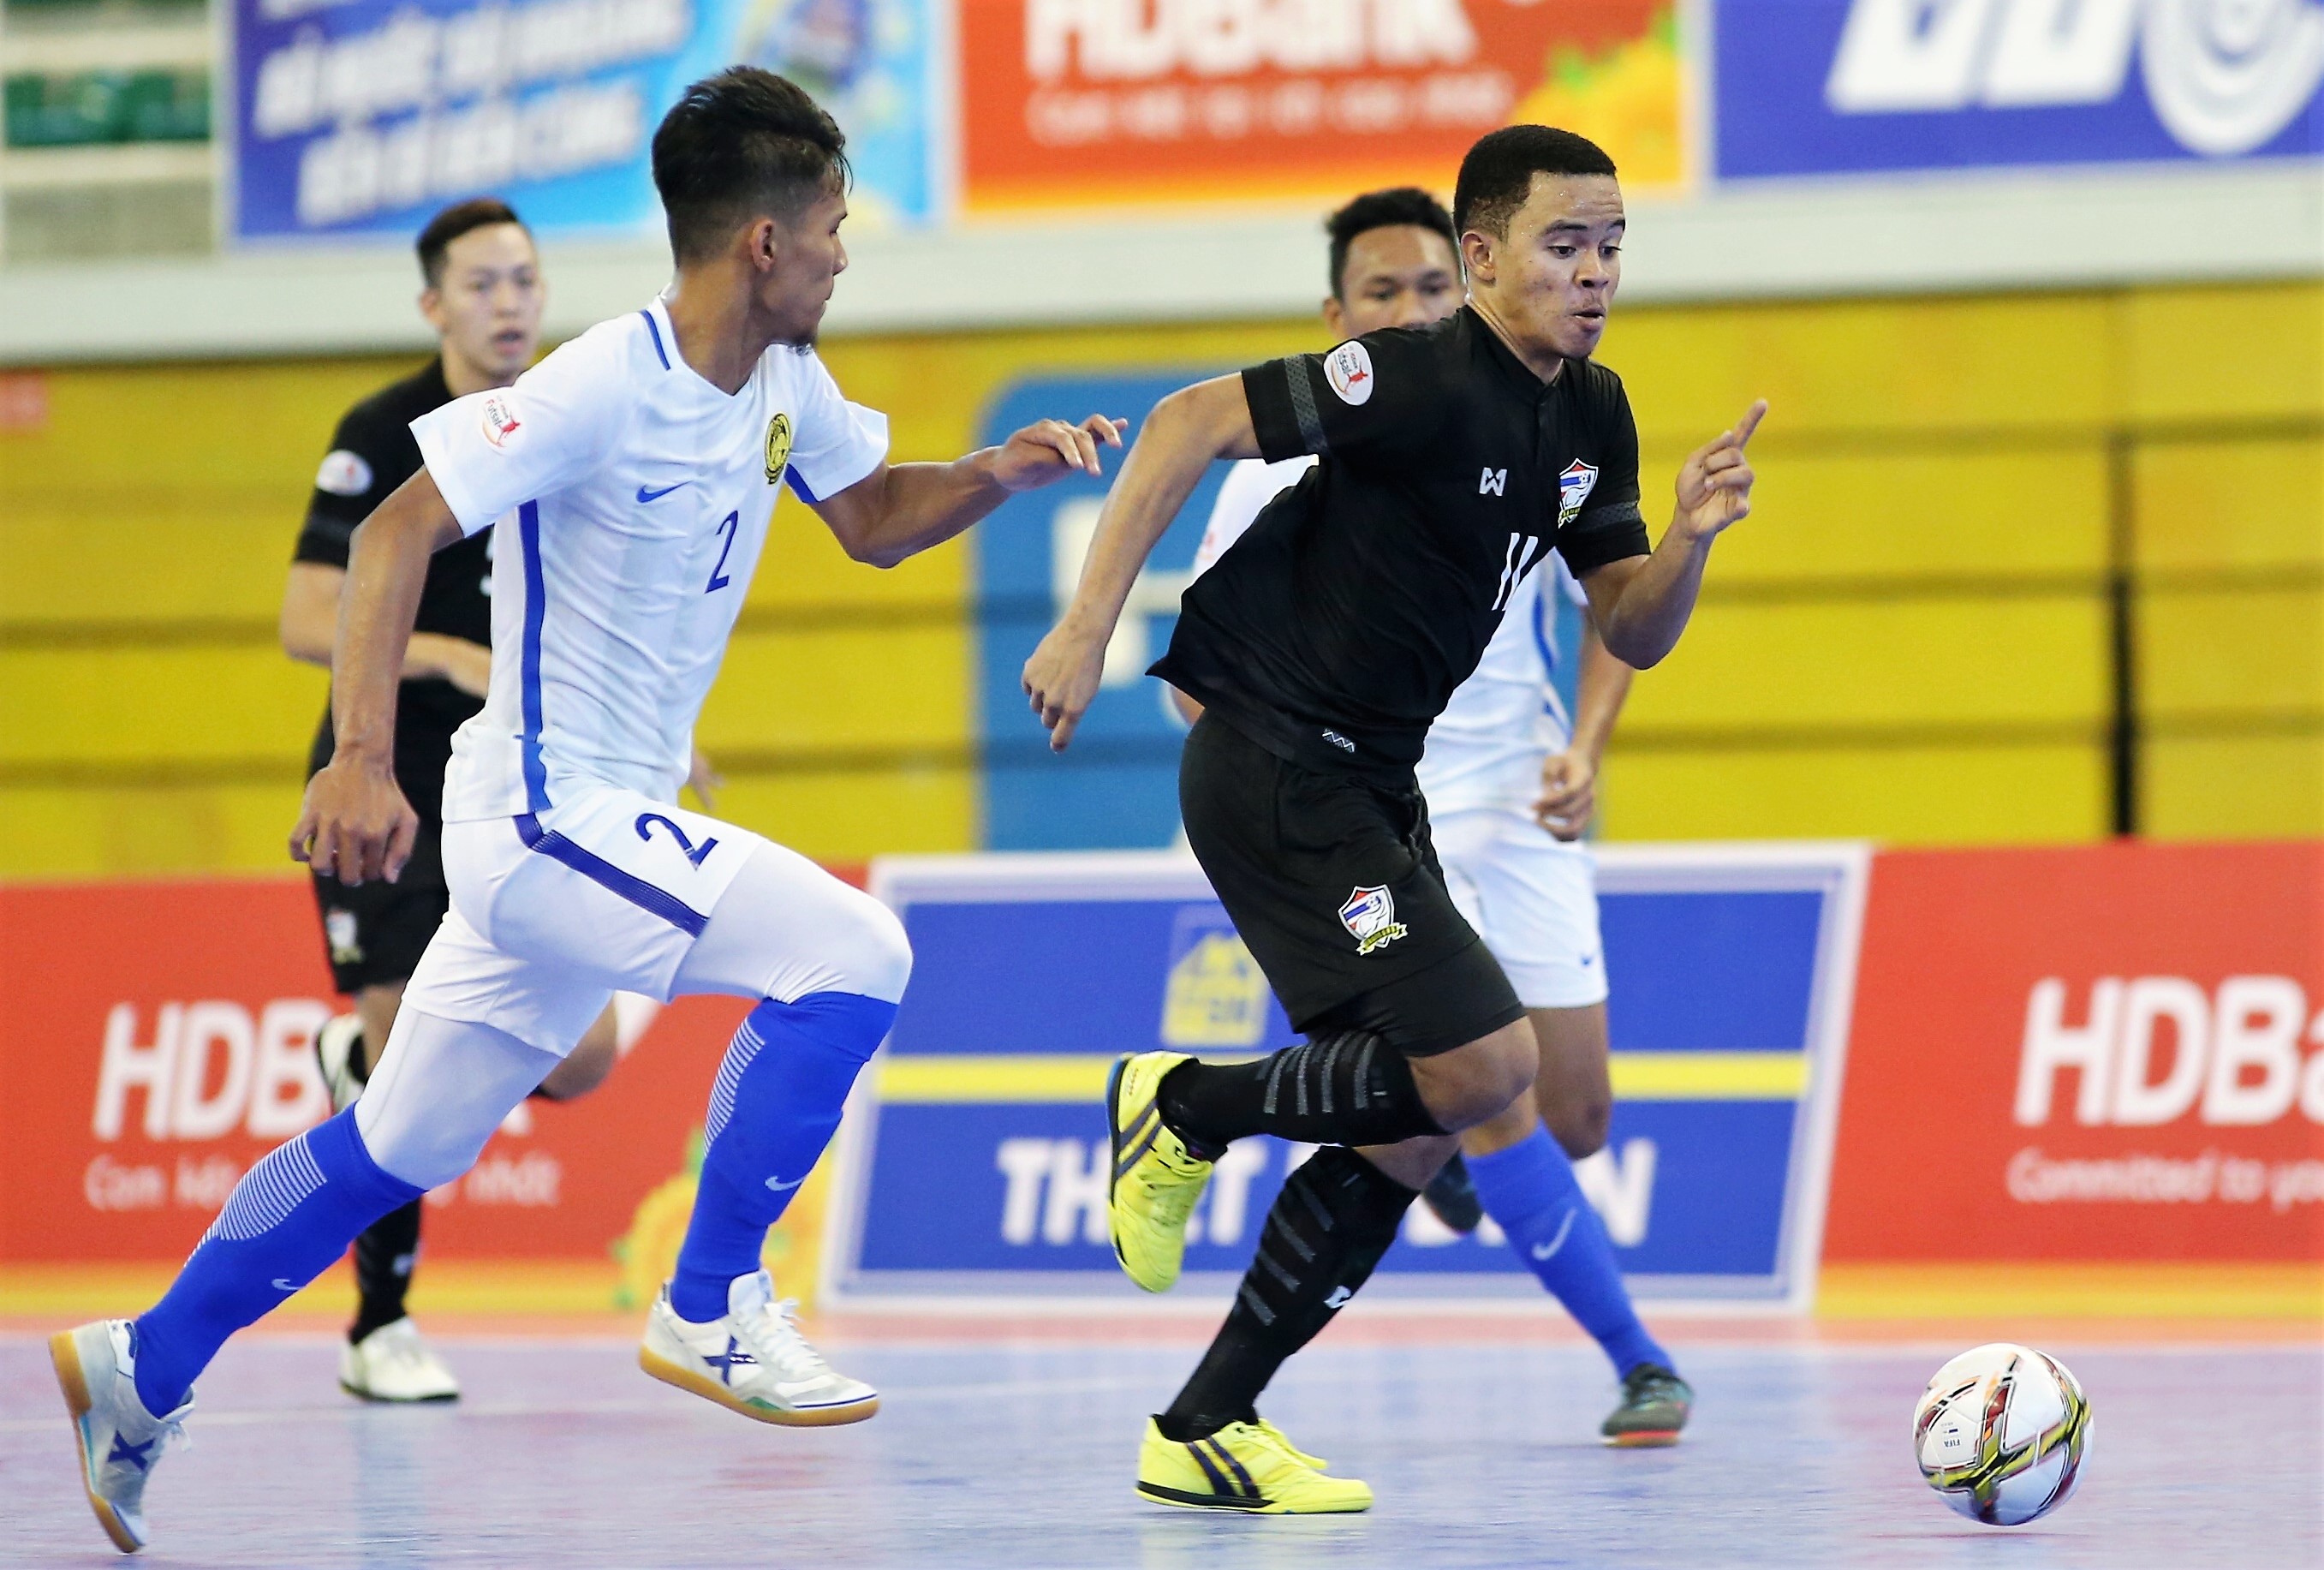    Giải futsal Đông Nam Á 2017: Đánh bại Malaysia 6-3, Thái Lan toàn thắng vào bán kết - Bóng Đá